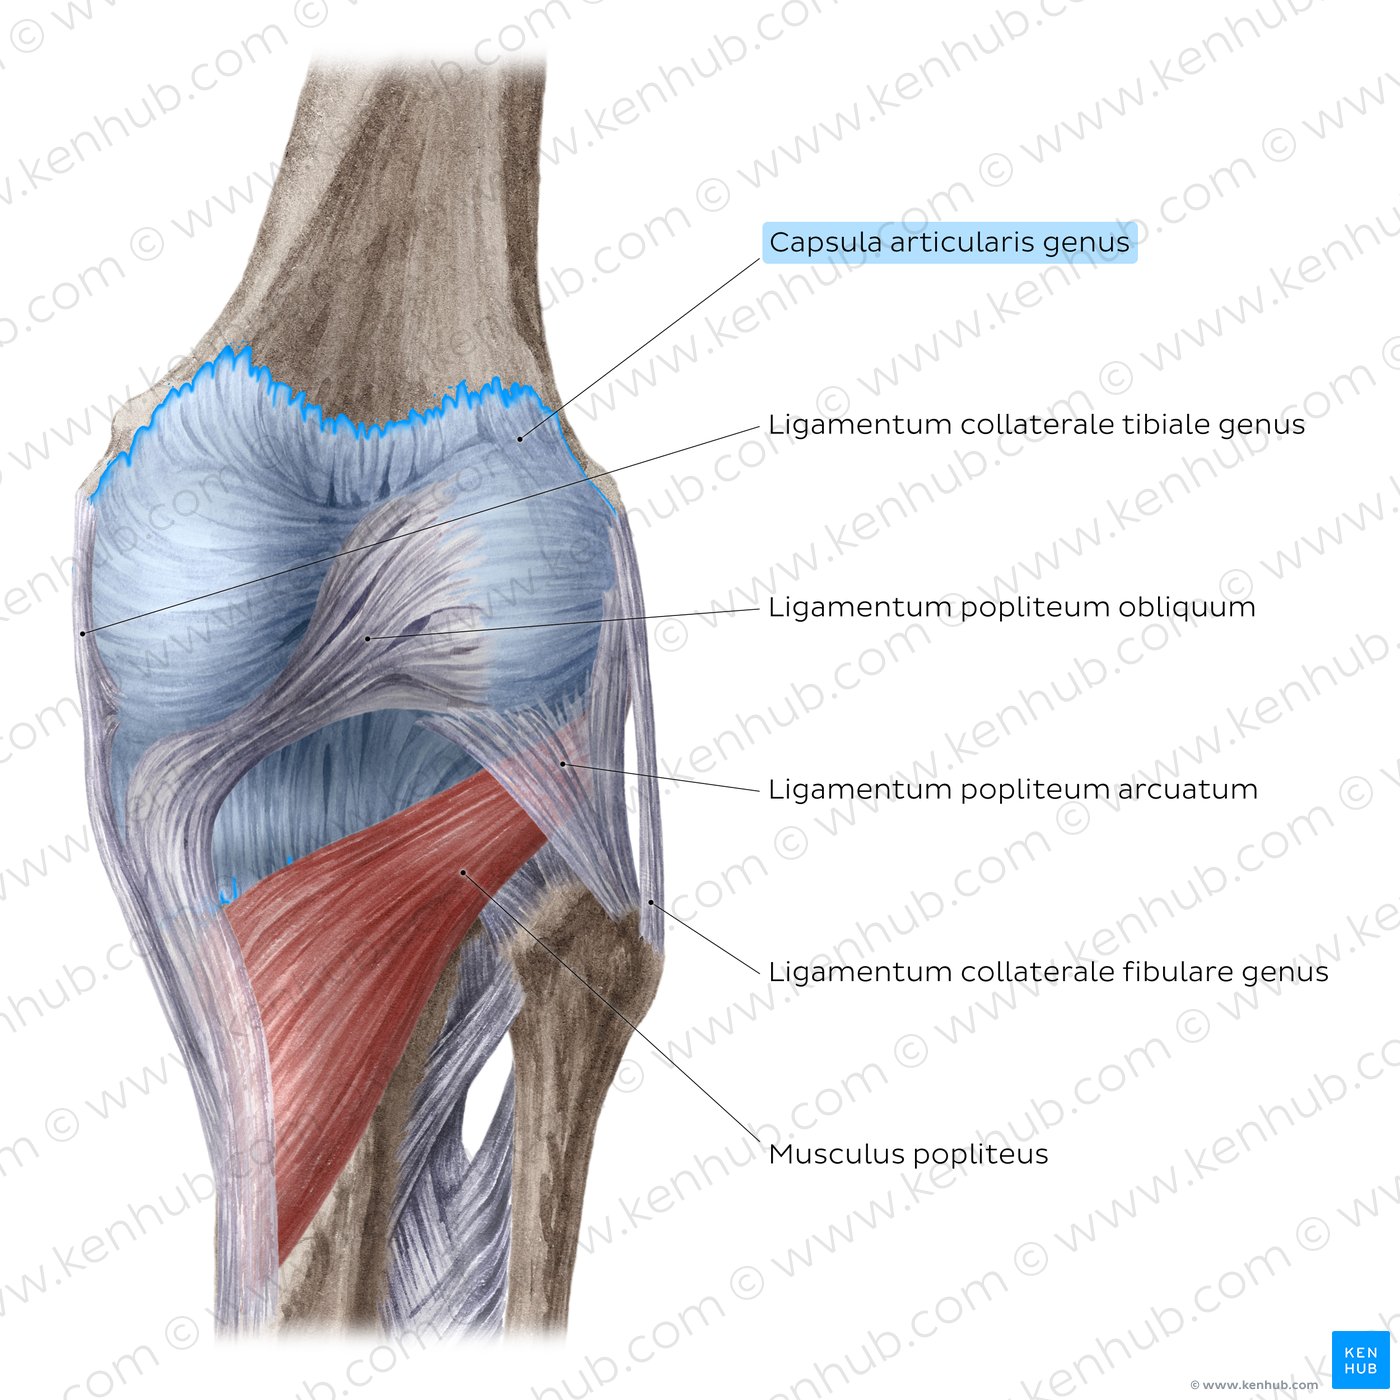 Kniegelenk: Extrakapsuläre Bänder und Popliteus-Muskel (posteriore Ansicht)